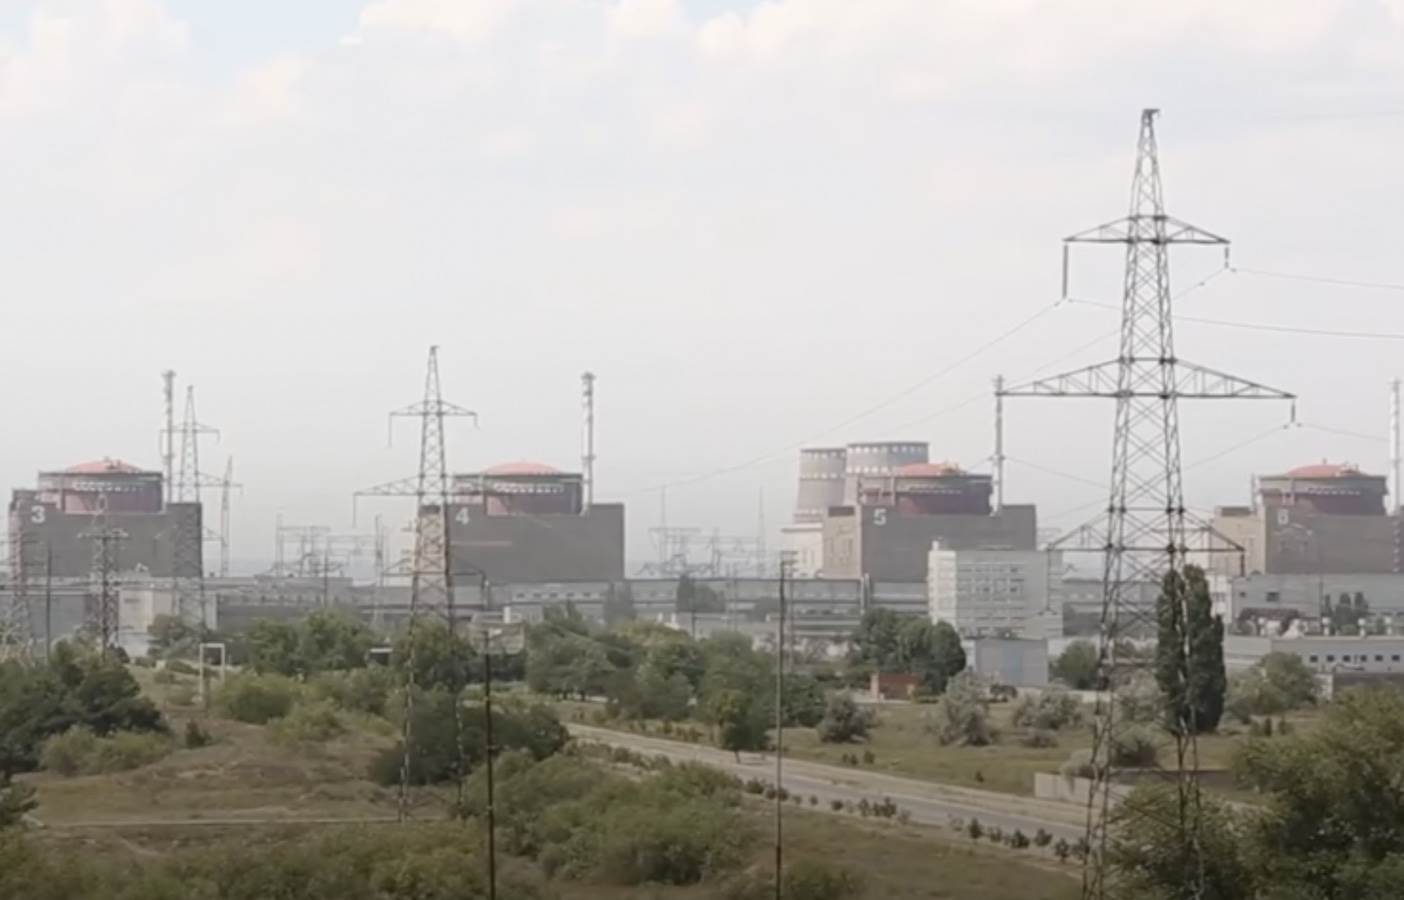  nuklearna elektrana Zaporožje granatirana 